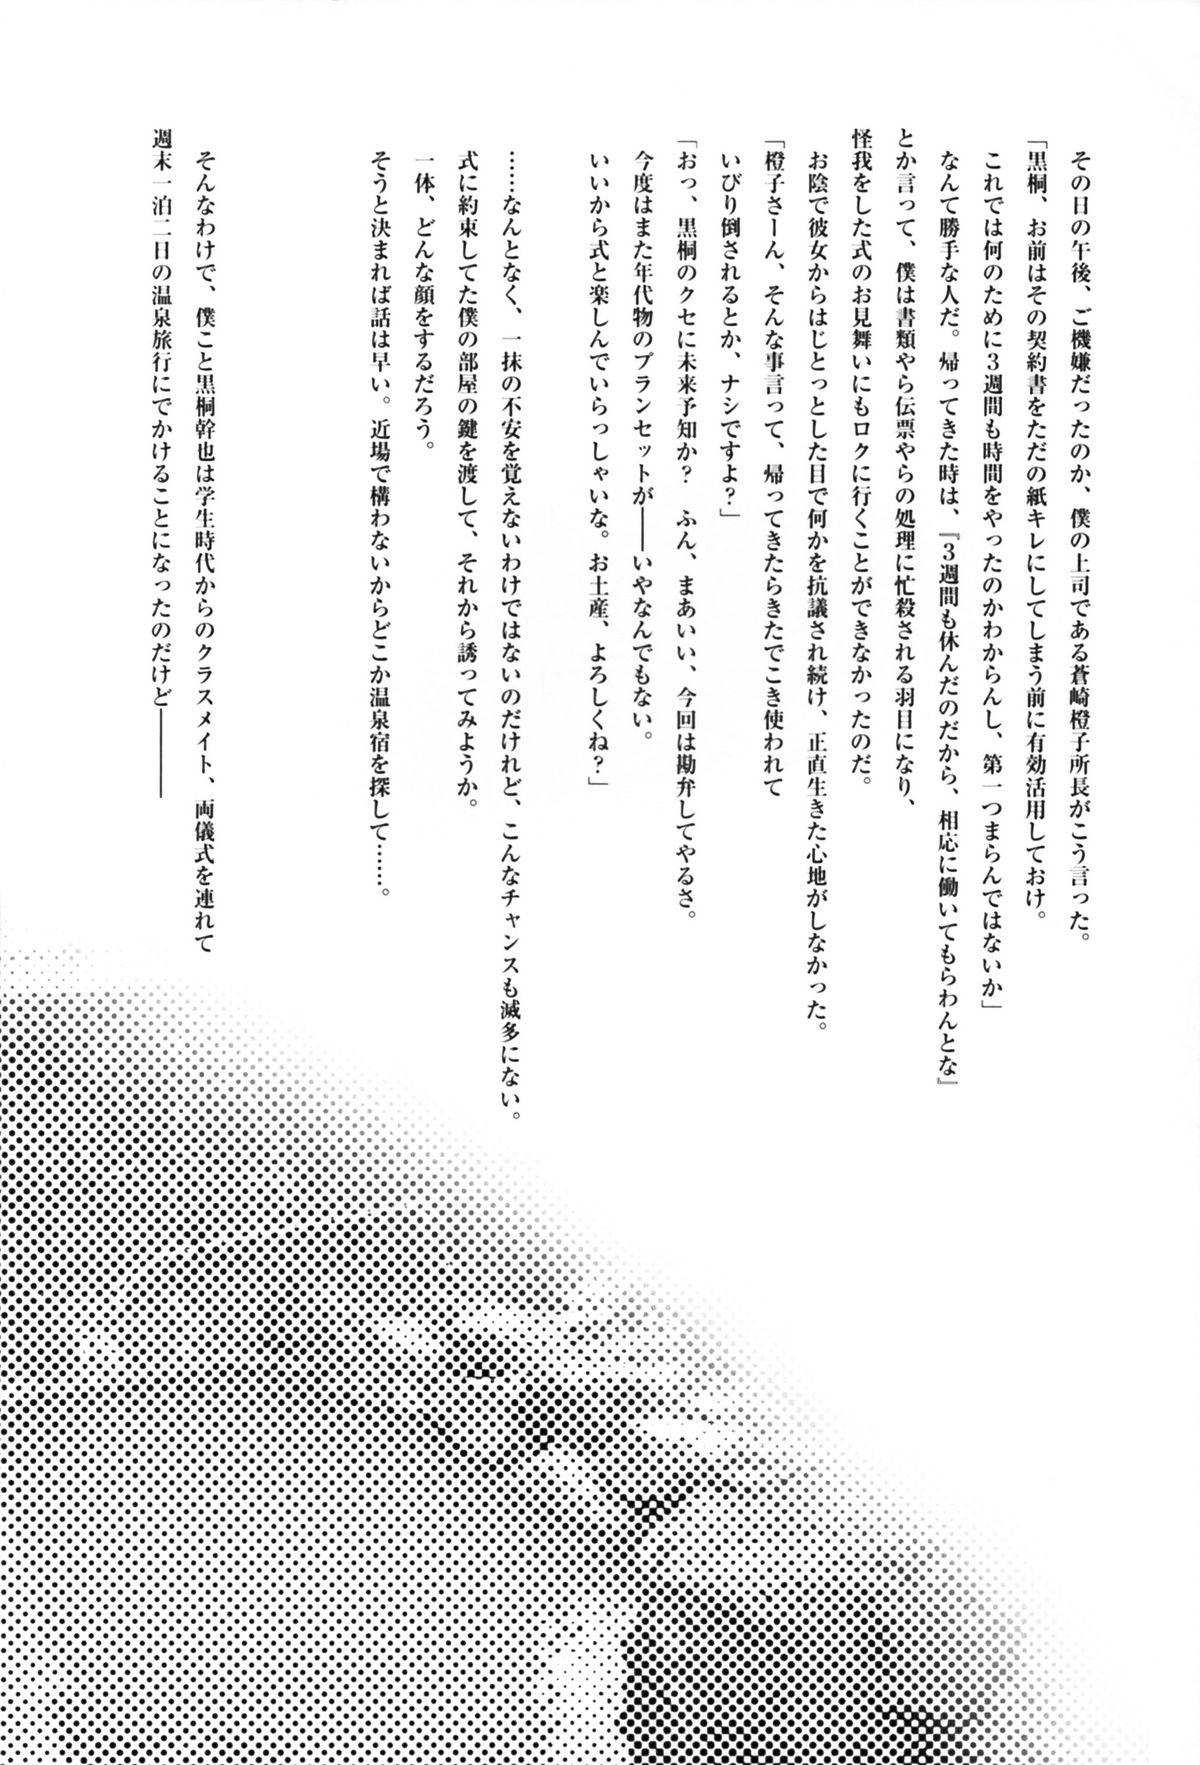 Mum Futari no Dokidoki Onsen Ryokou - Kara no kyoukai Step Fantasy - Page 4